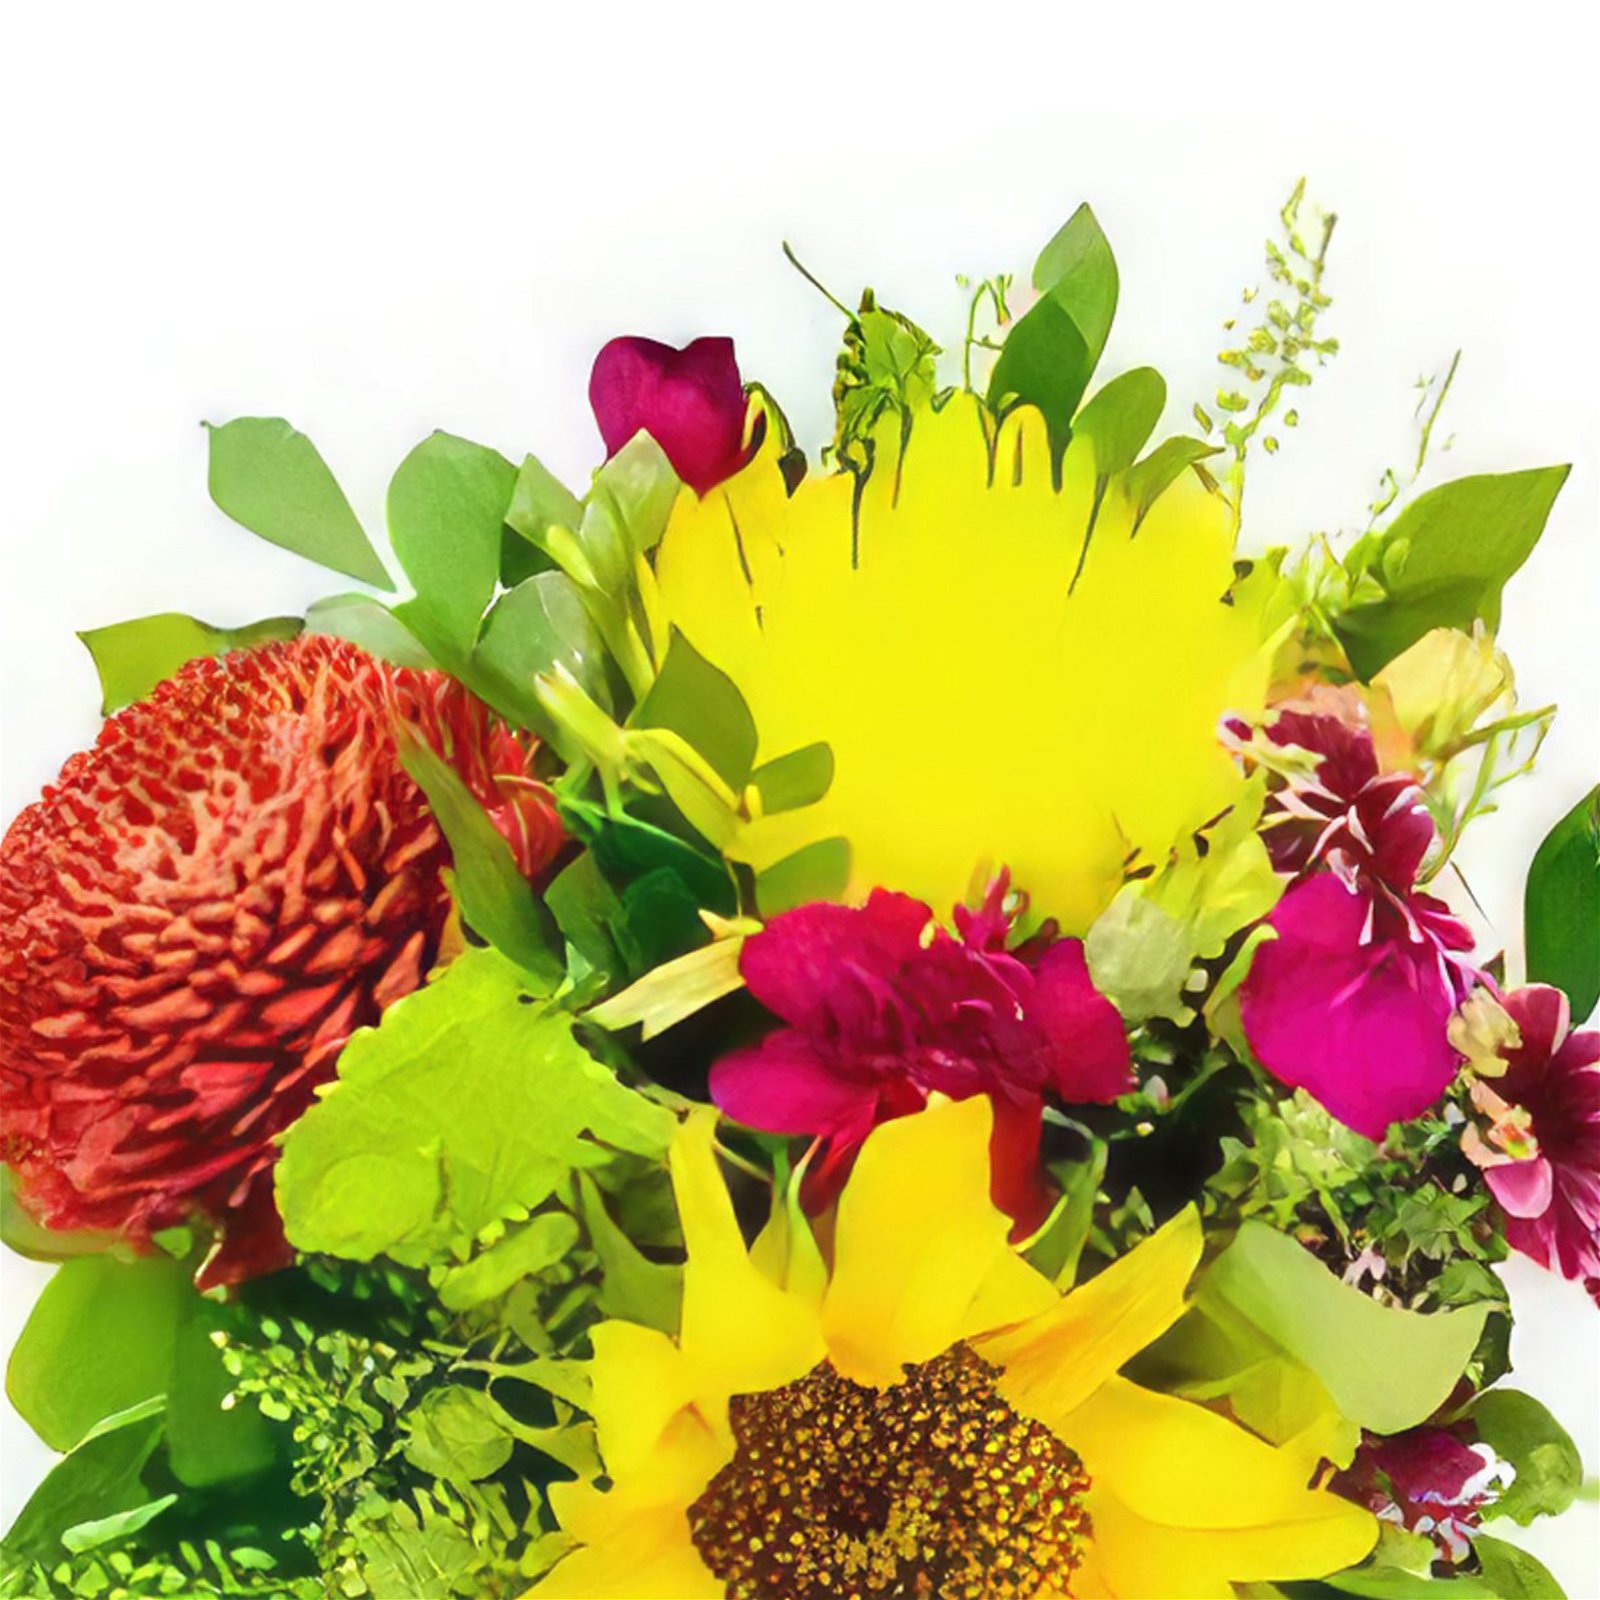 Chivirico Blumen Florist- Frühlingsliebe Bouquet/Blumenschmuck